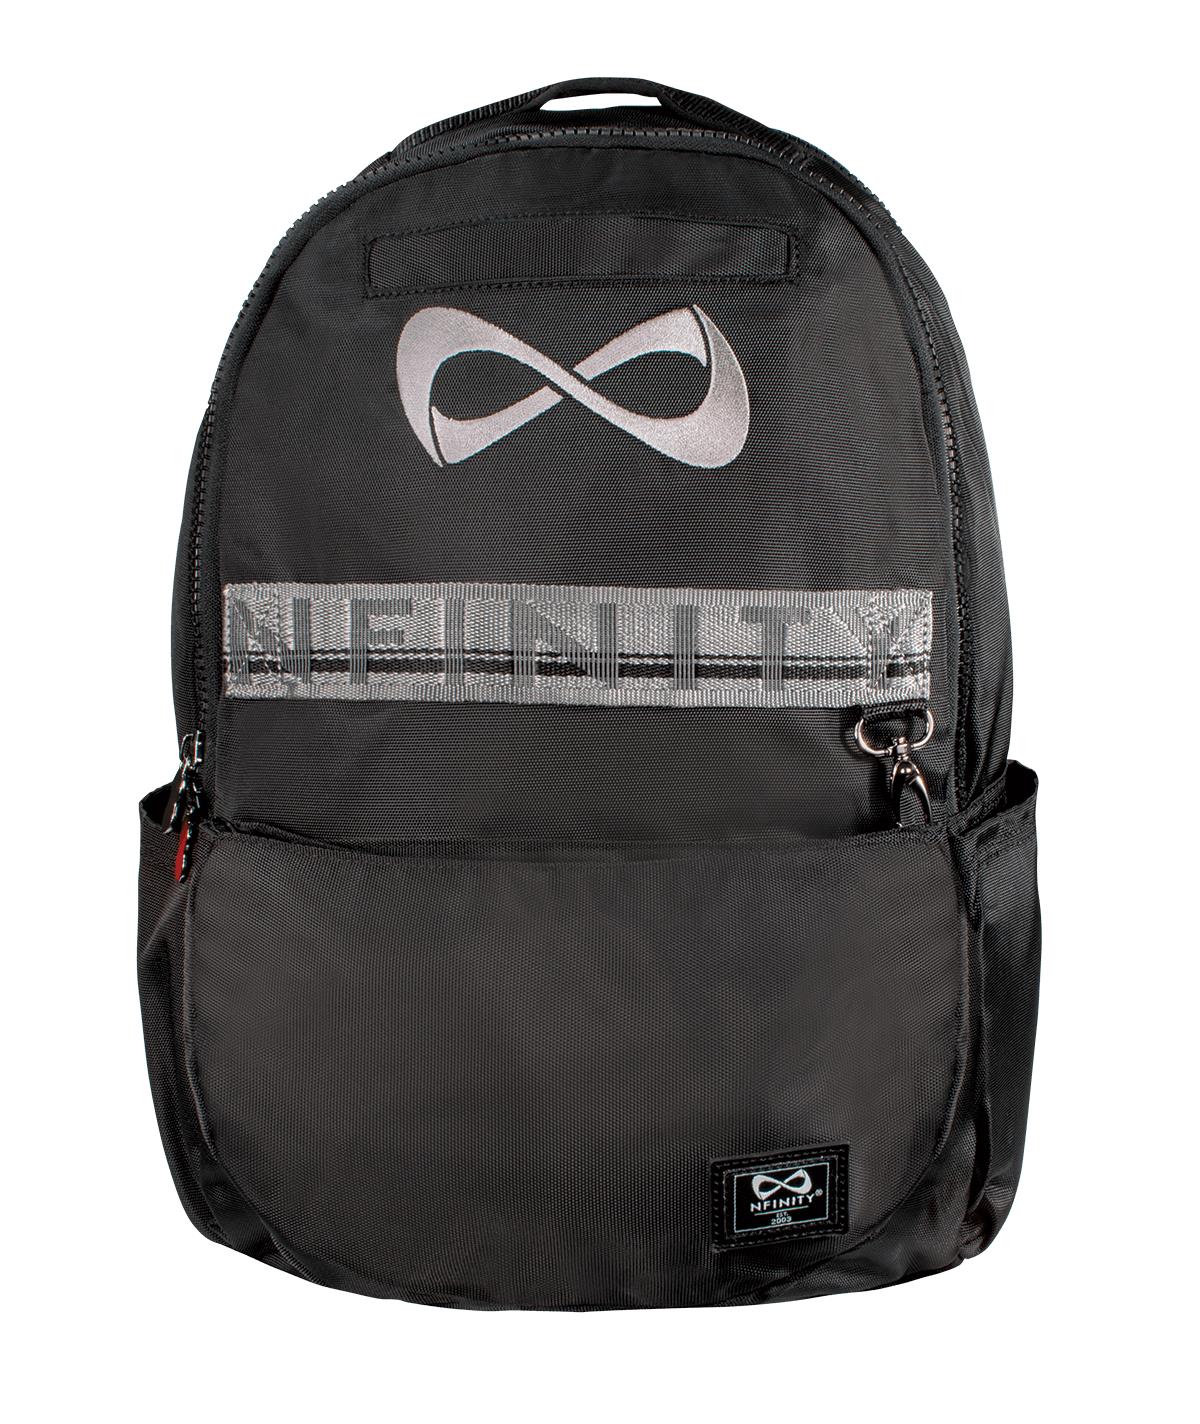 Nfinity Backpack Cheer Bag Black Weekender 